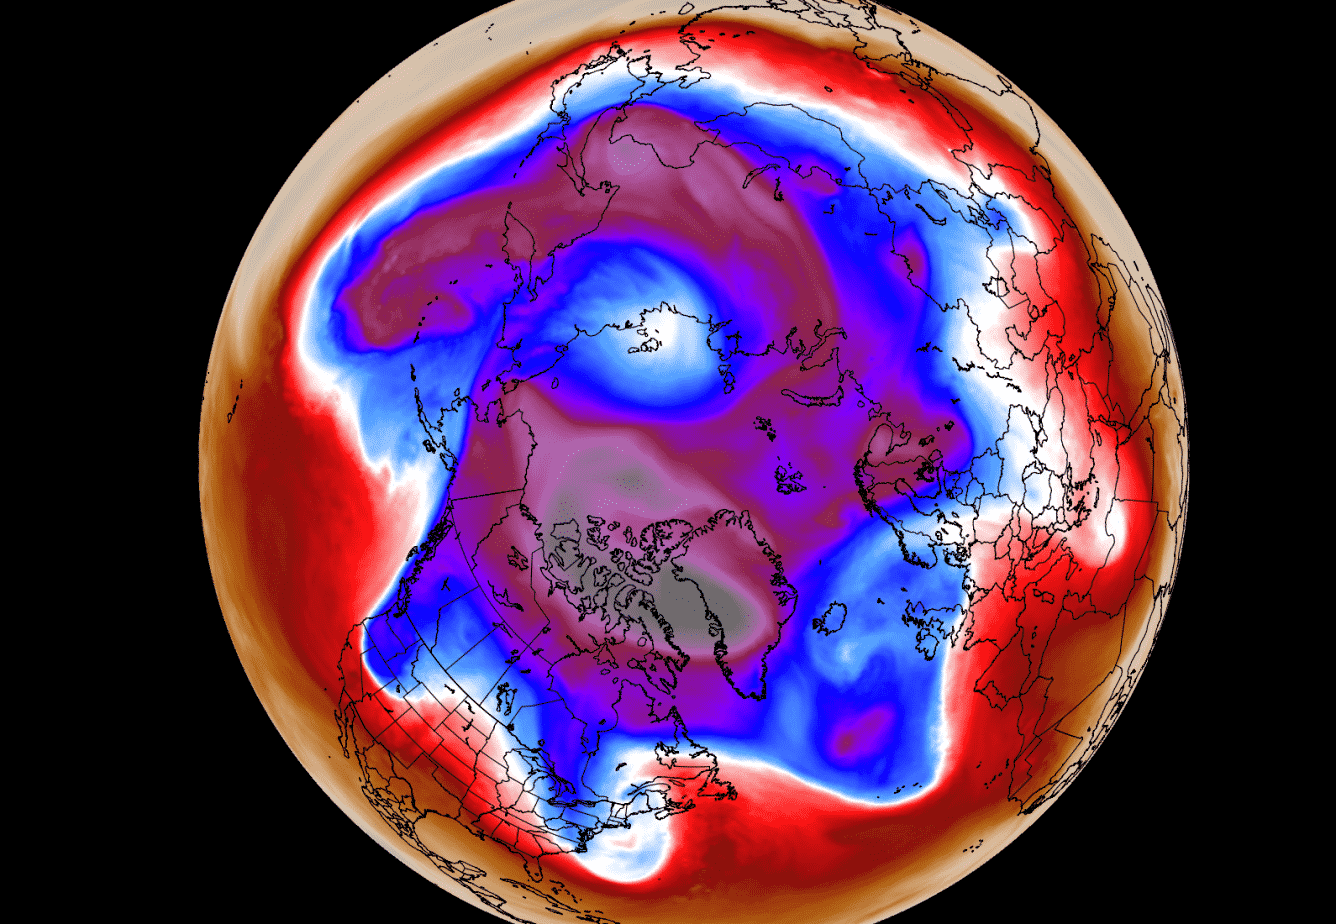 polar-vortex-warming-collapse-weather-winter-season-update-march-2022-united-states-europe-north-hemisphere-cold-pressure-pattern